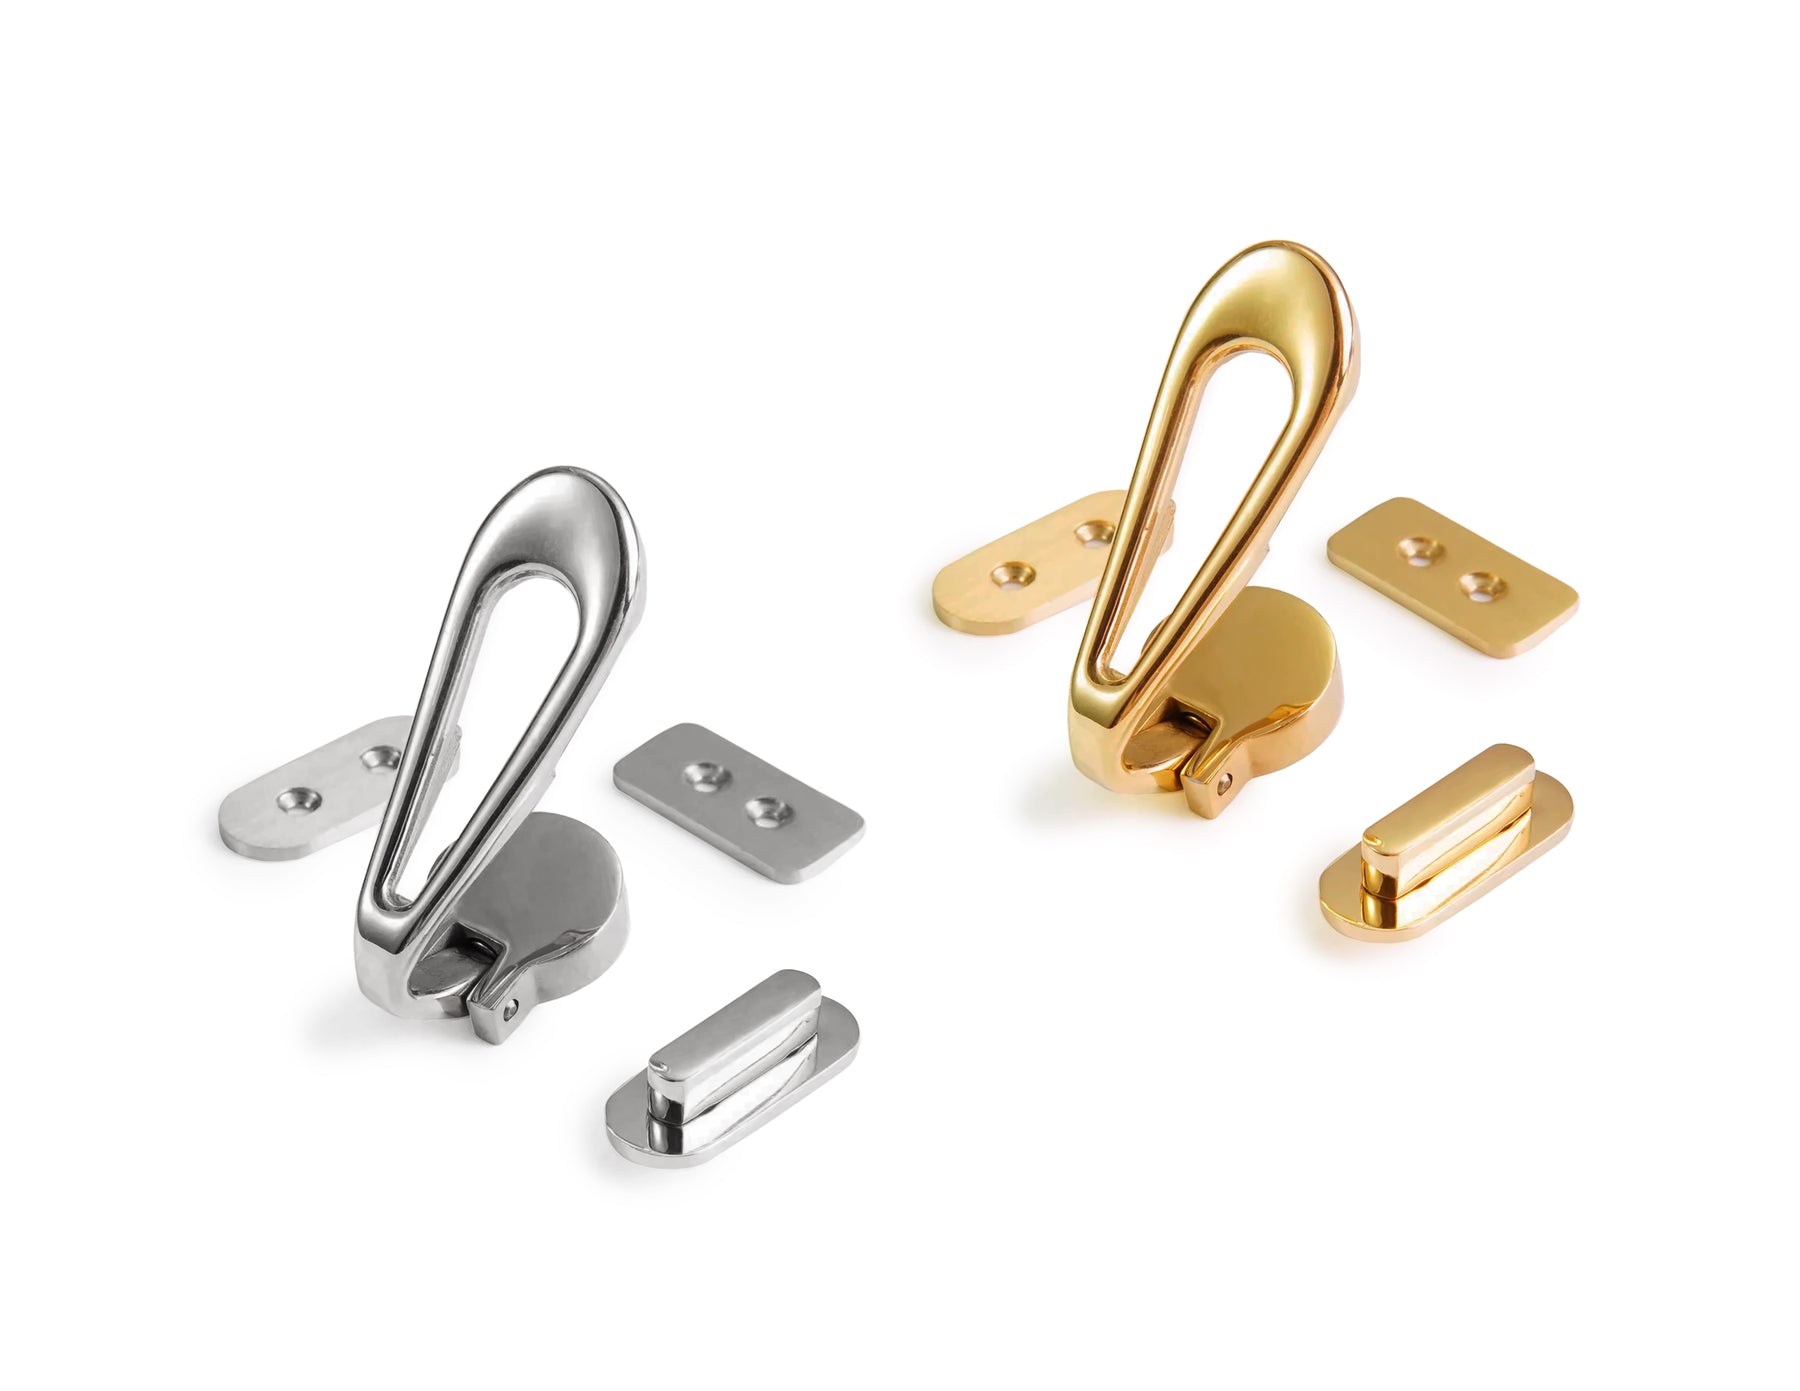 Kallisto - Luxury Clasp Lock (Stainless Steel)